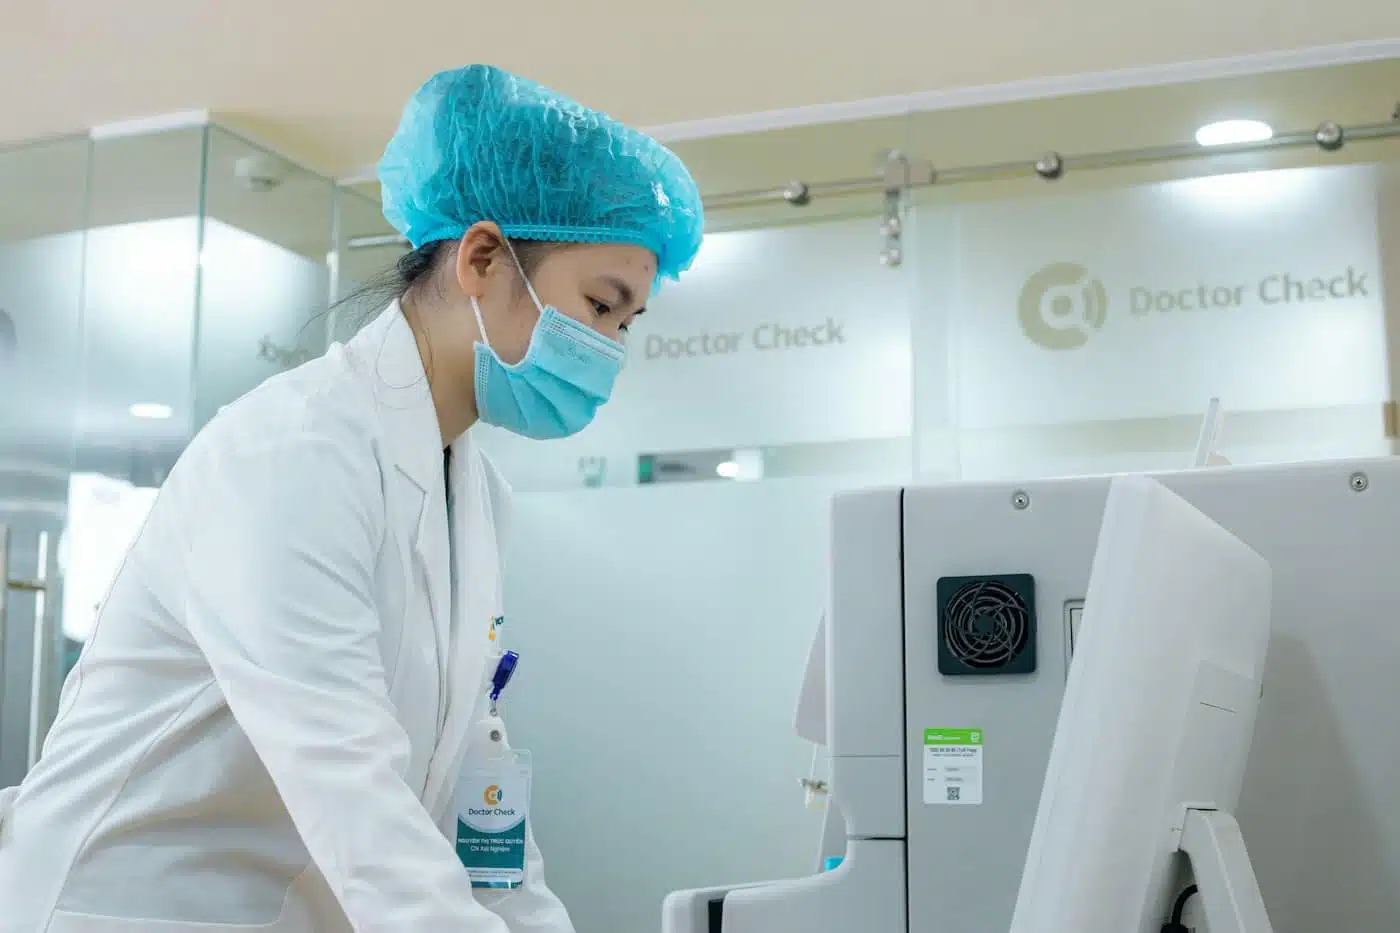 Doctor Check trang bị thiết bị hiện đại để xét nghiệm cho dau bung giun